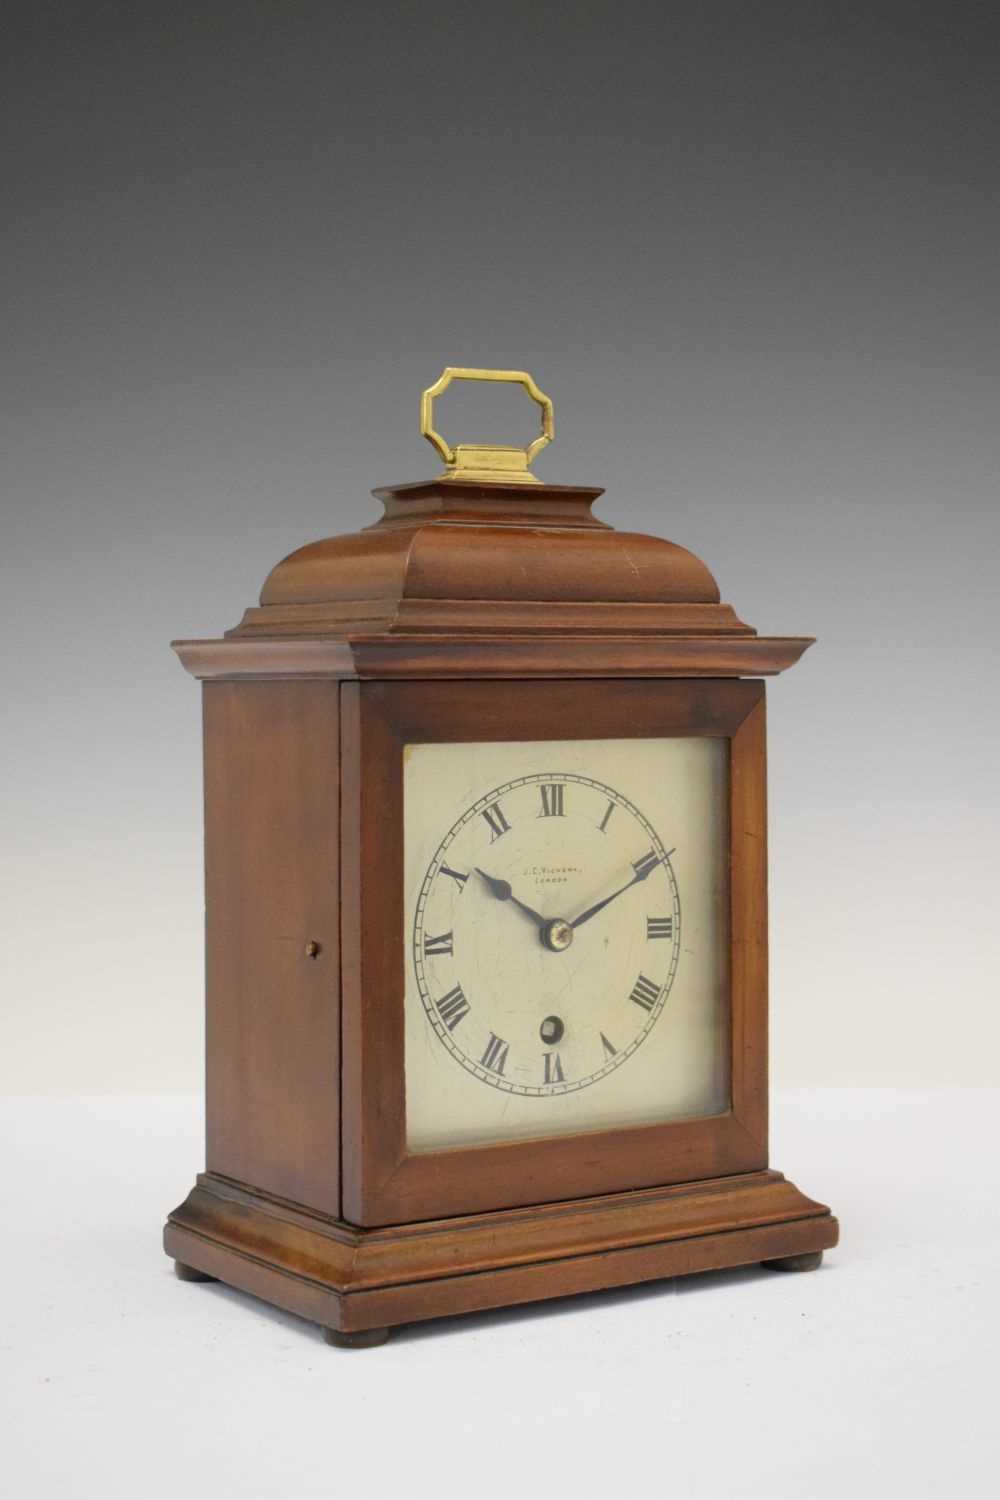 J. C. Vickery, London (Retailer) - Georgian style mantel timepiece - Image 2 of 5